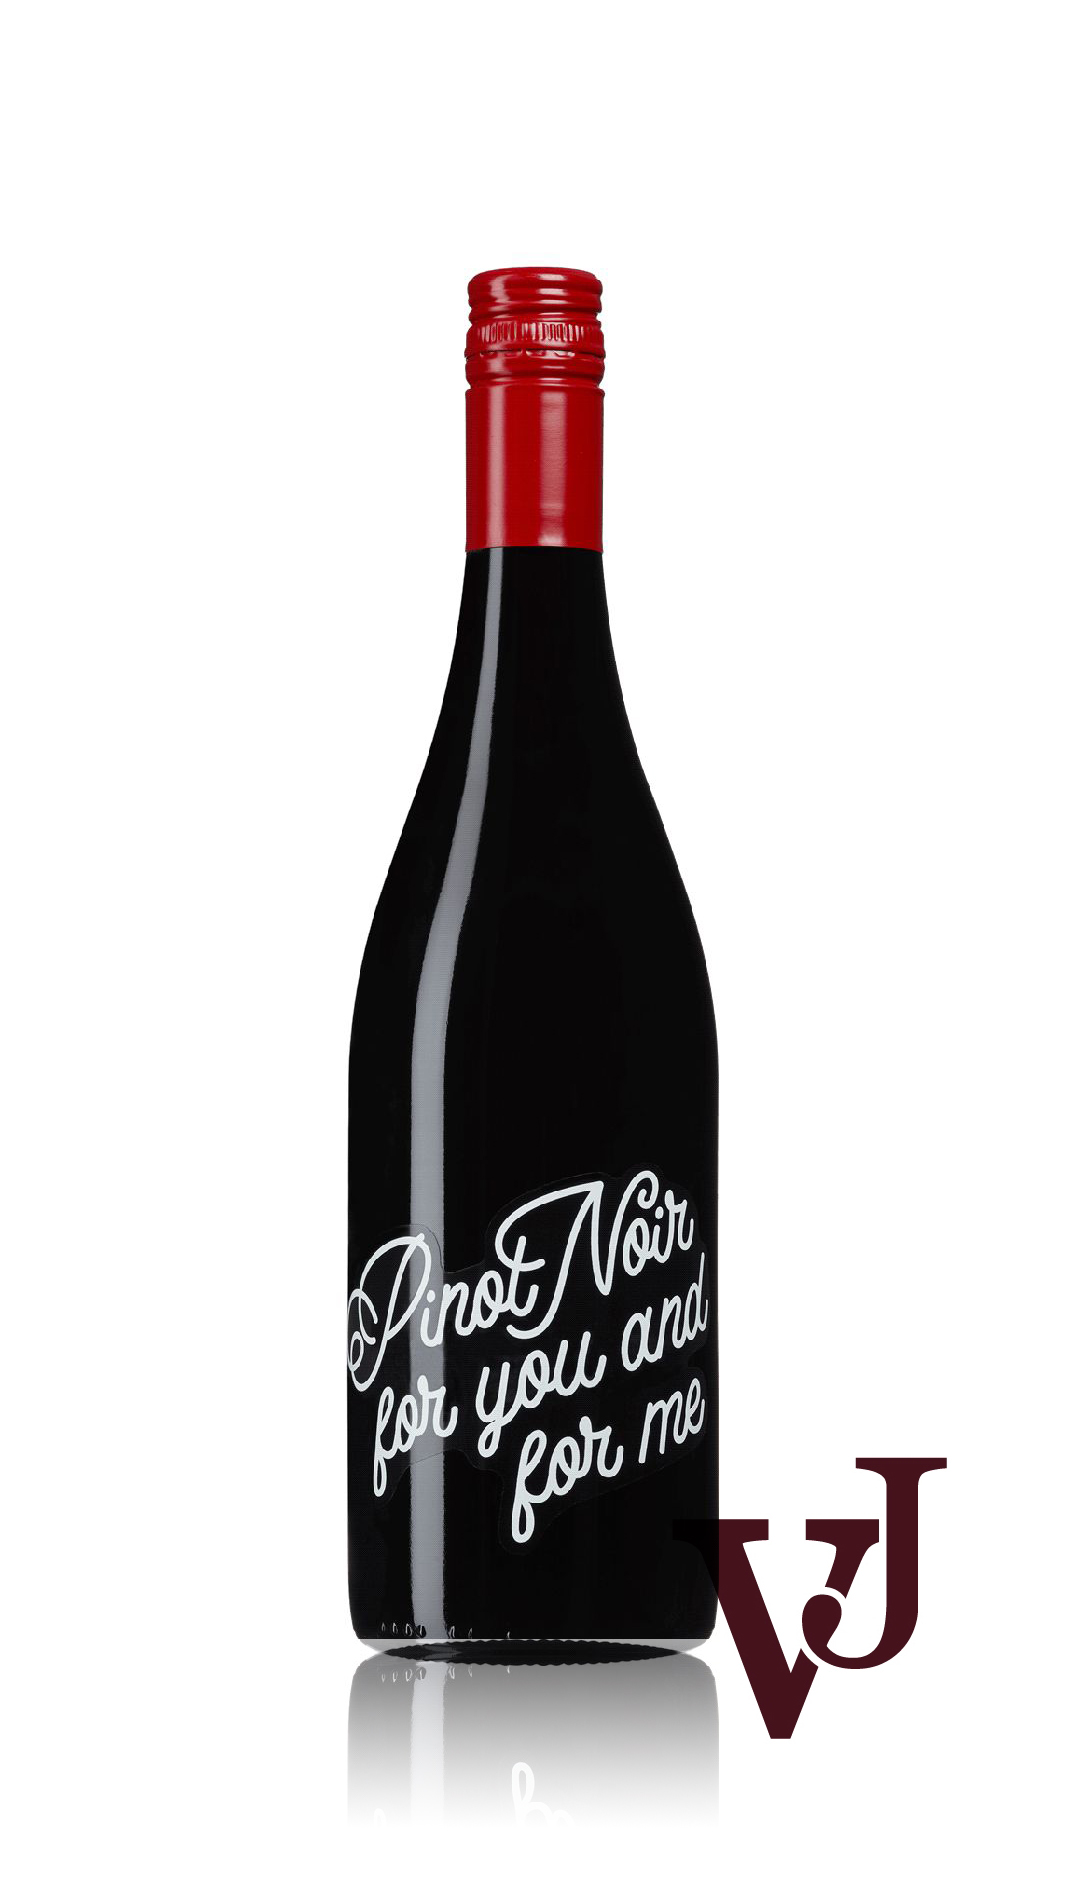 Rött Vin - Pinot Noir for you and for me artikel nummer 5111701 från producenten Globus Wine från området Moldavien